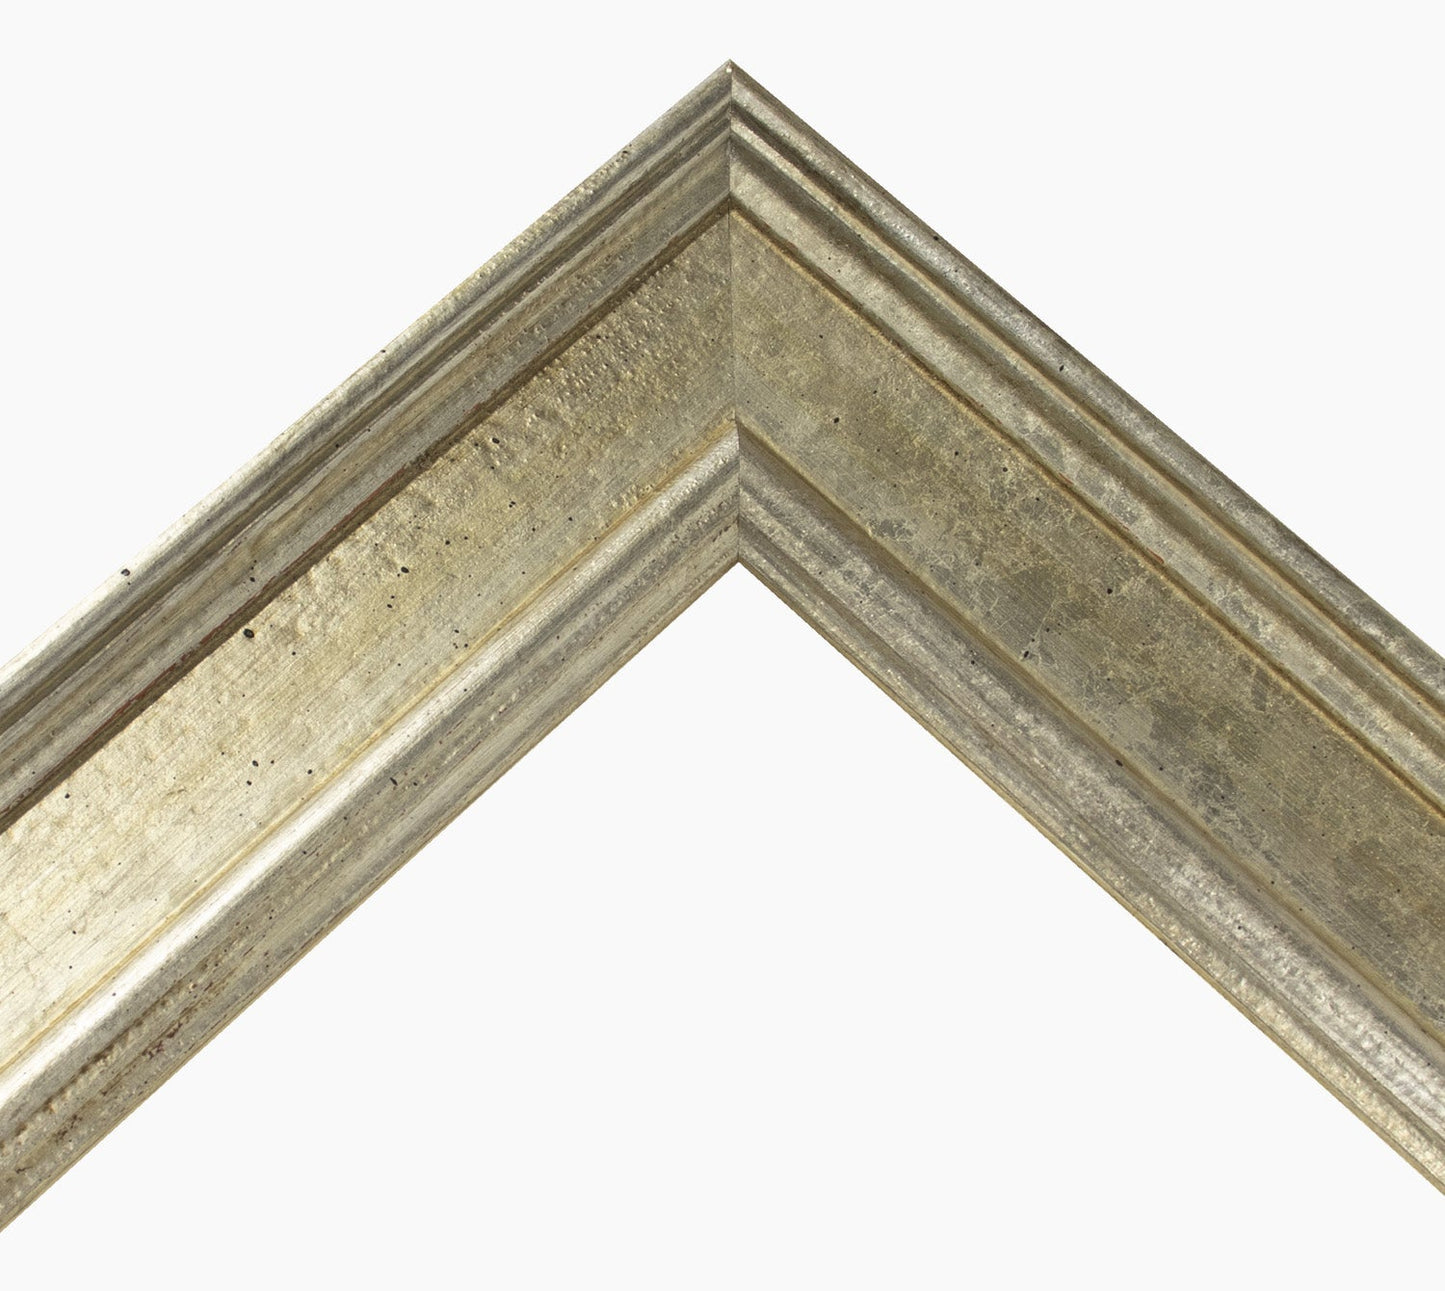 340.011 cadre en bois à la feuille d'argent mesure de profil 60x30 mm Lombarda cornici S.n.c.